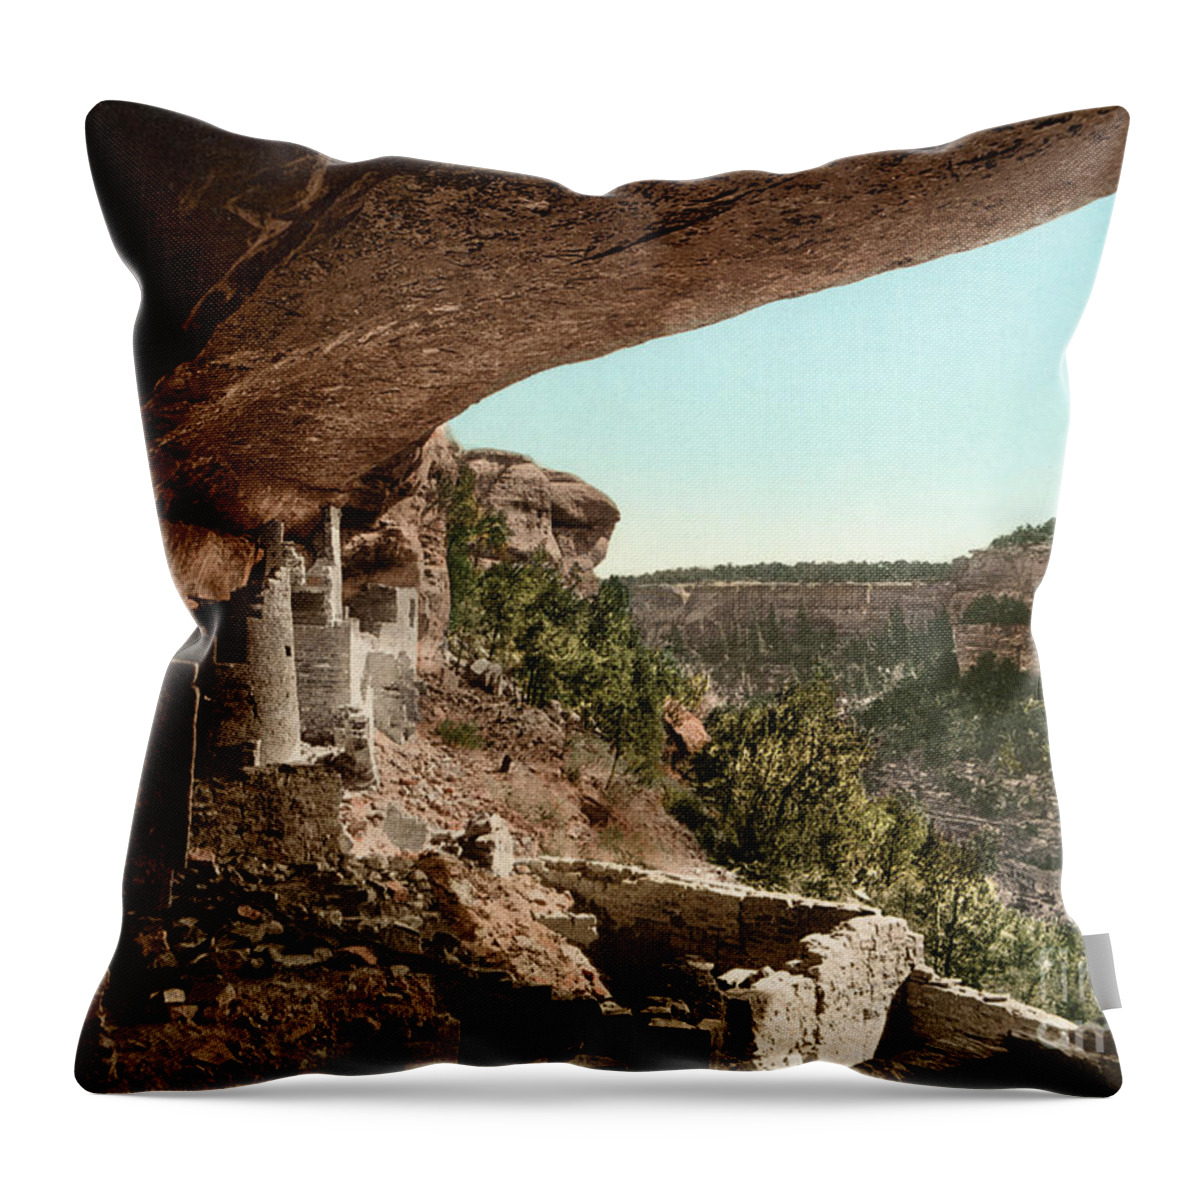 1898 Throw Pillow featuring the photograph Mesa Verde, Colorado by Granger